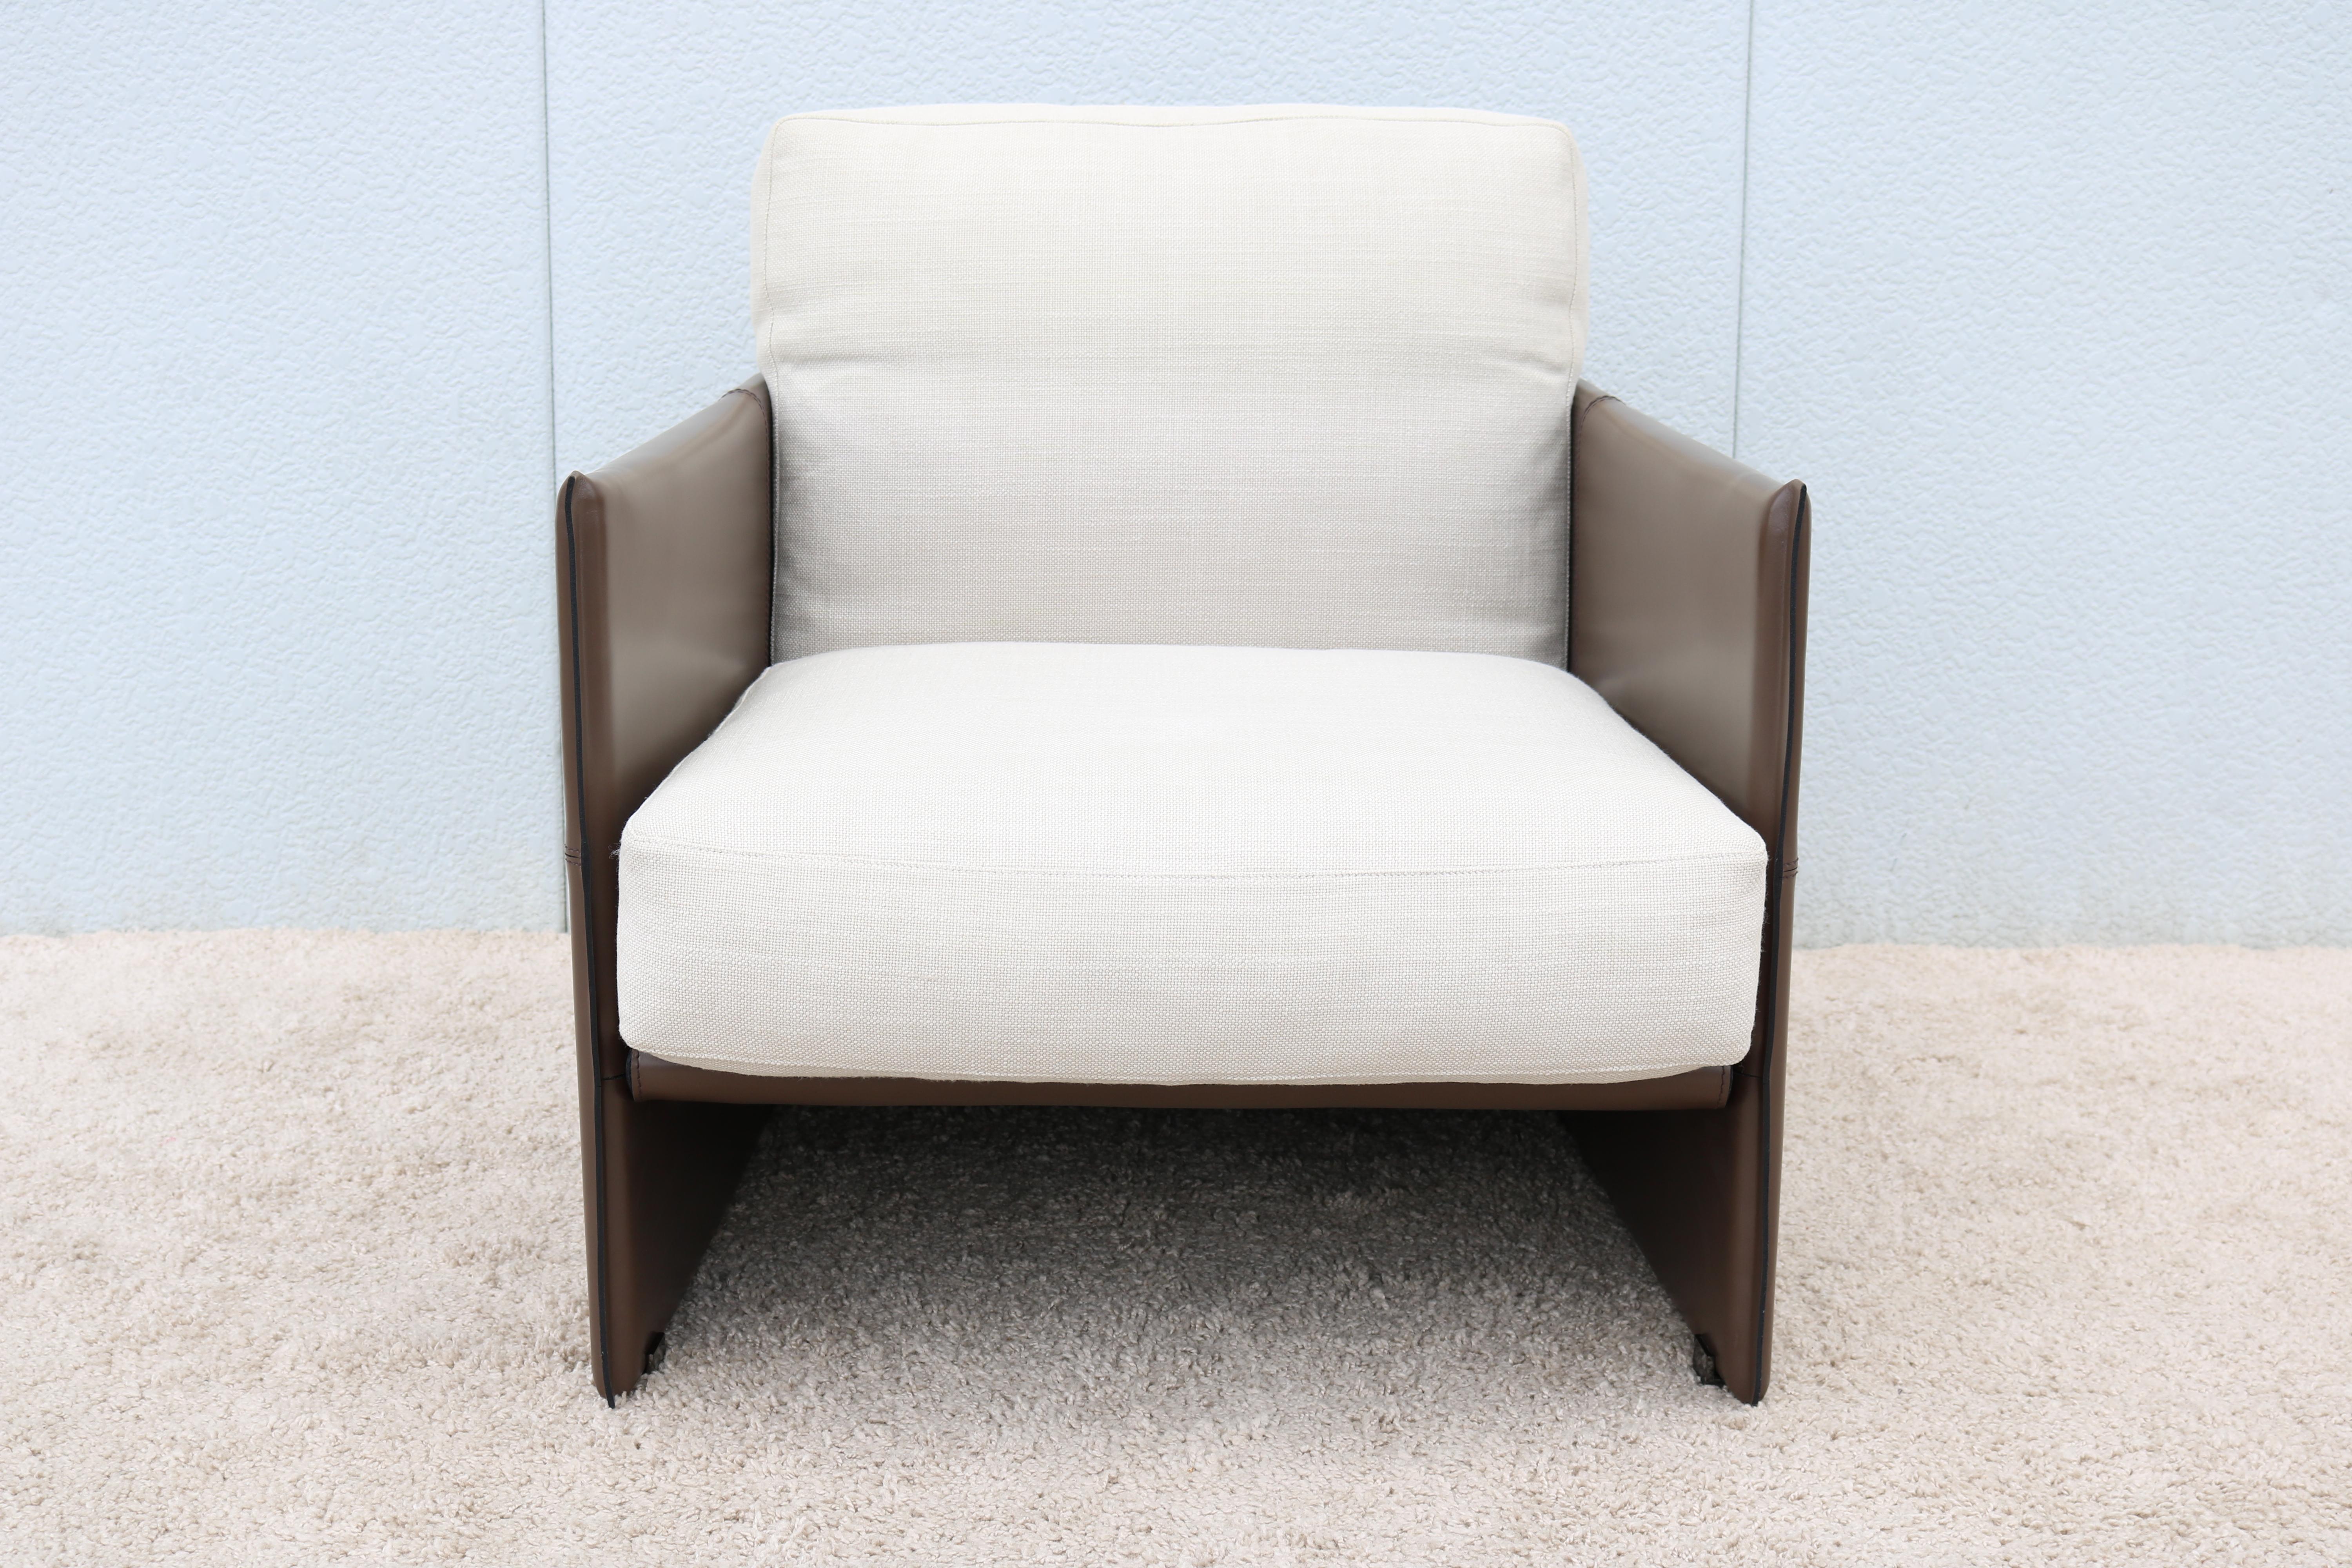 Der elegante Sessel Eleg easy wurde von Rodolfo Dordoni für den italienischen Hersteller Minotti entworfen.
Ein Sessel mit einer quadratischen Form und einem starken ästhetischen Reiz. 
Charakterisiert durch strenge Linien und weiche Kurven,